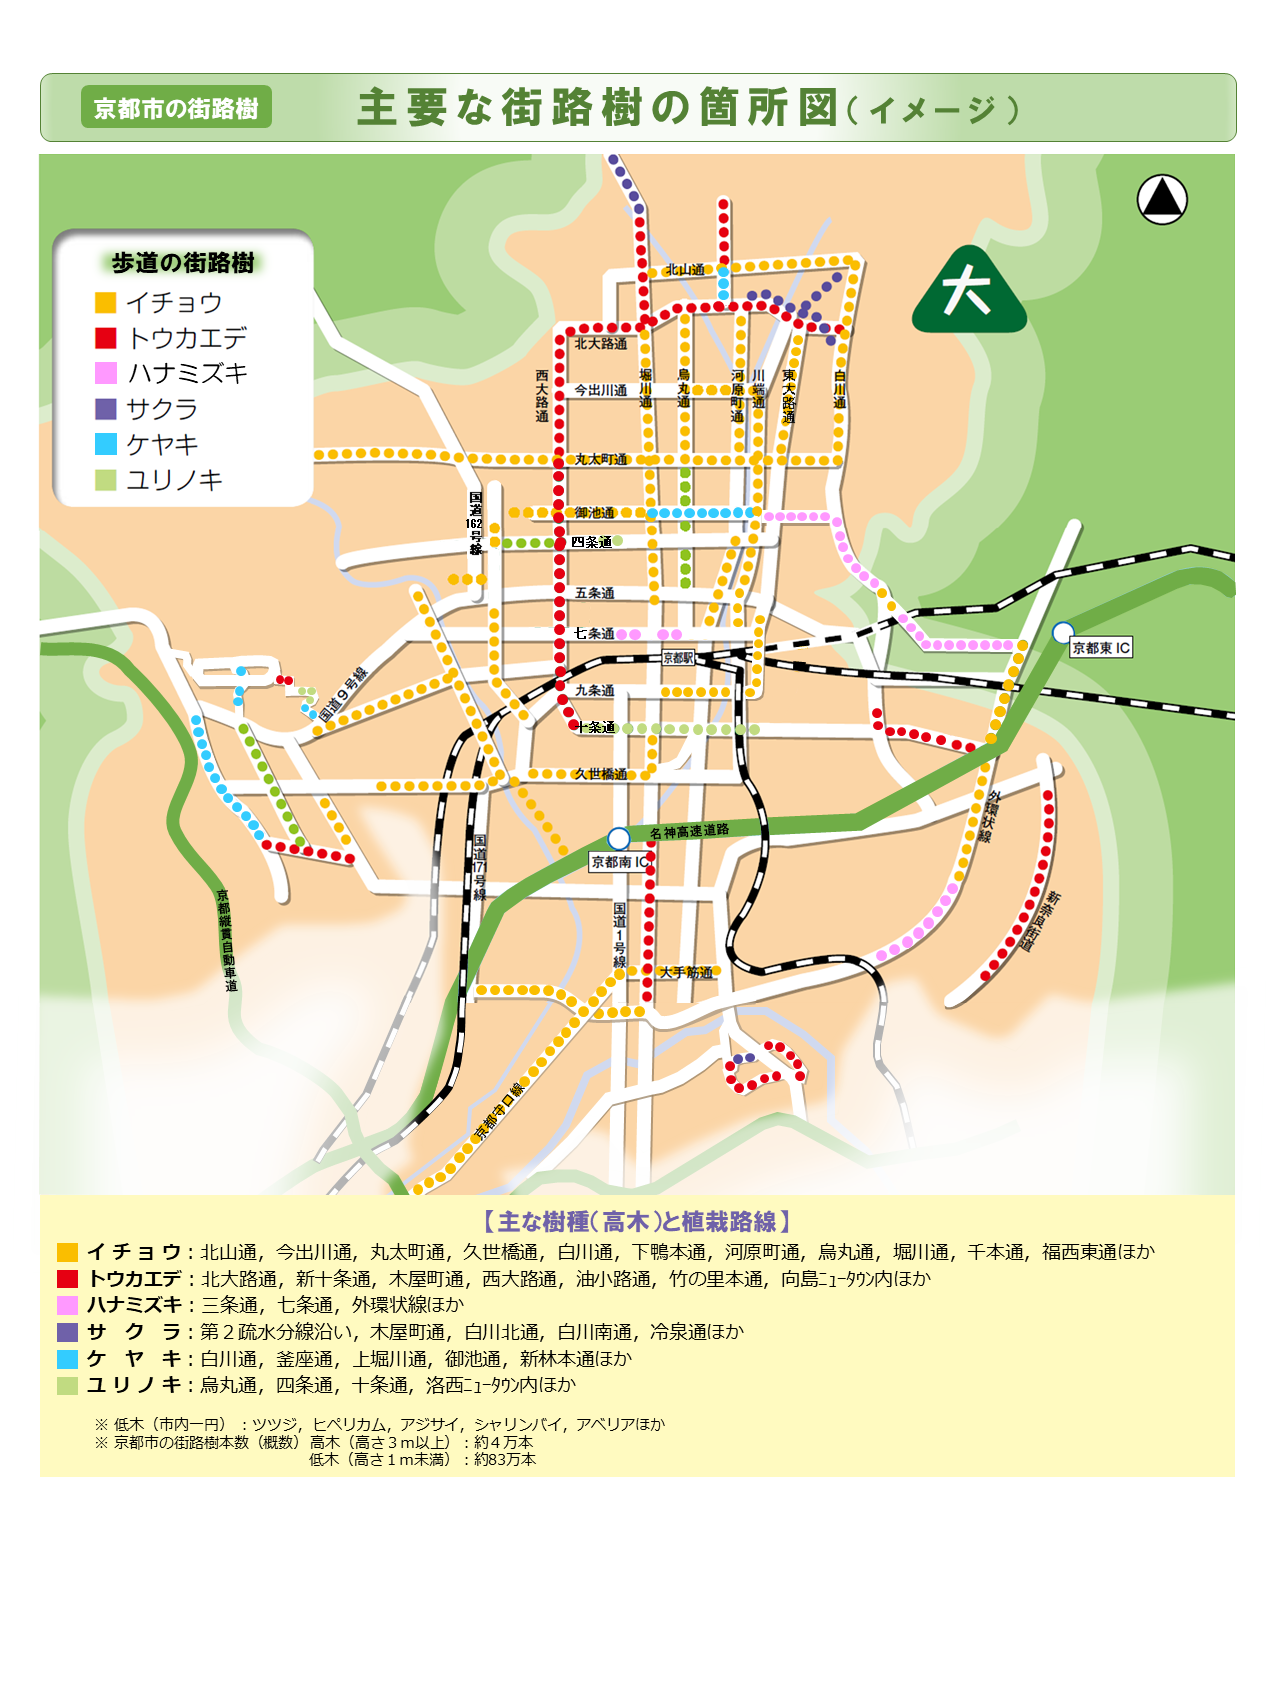 京都市 京都市の街路樹マップ